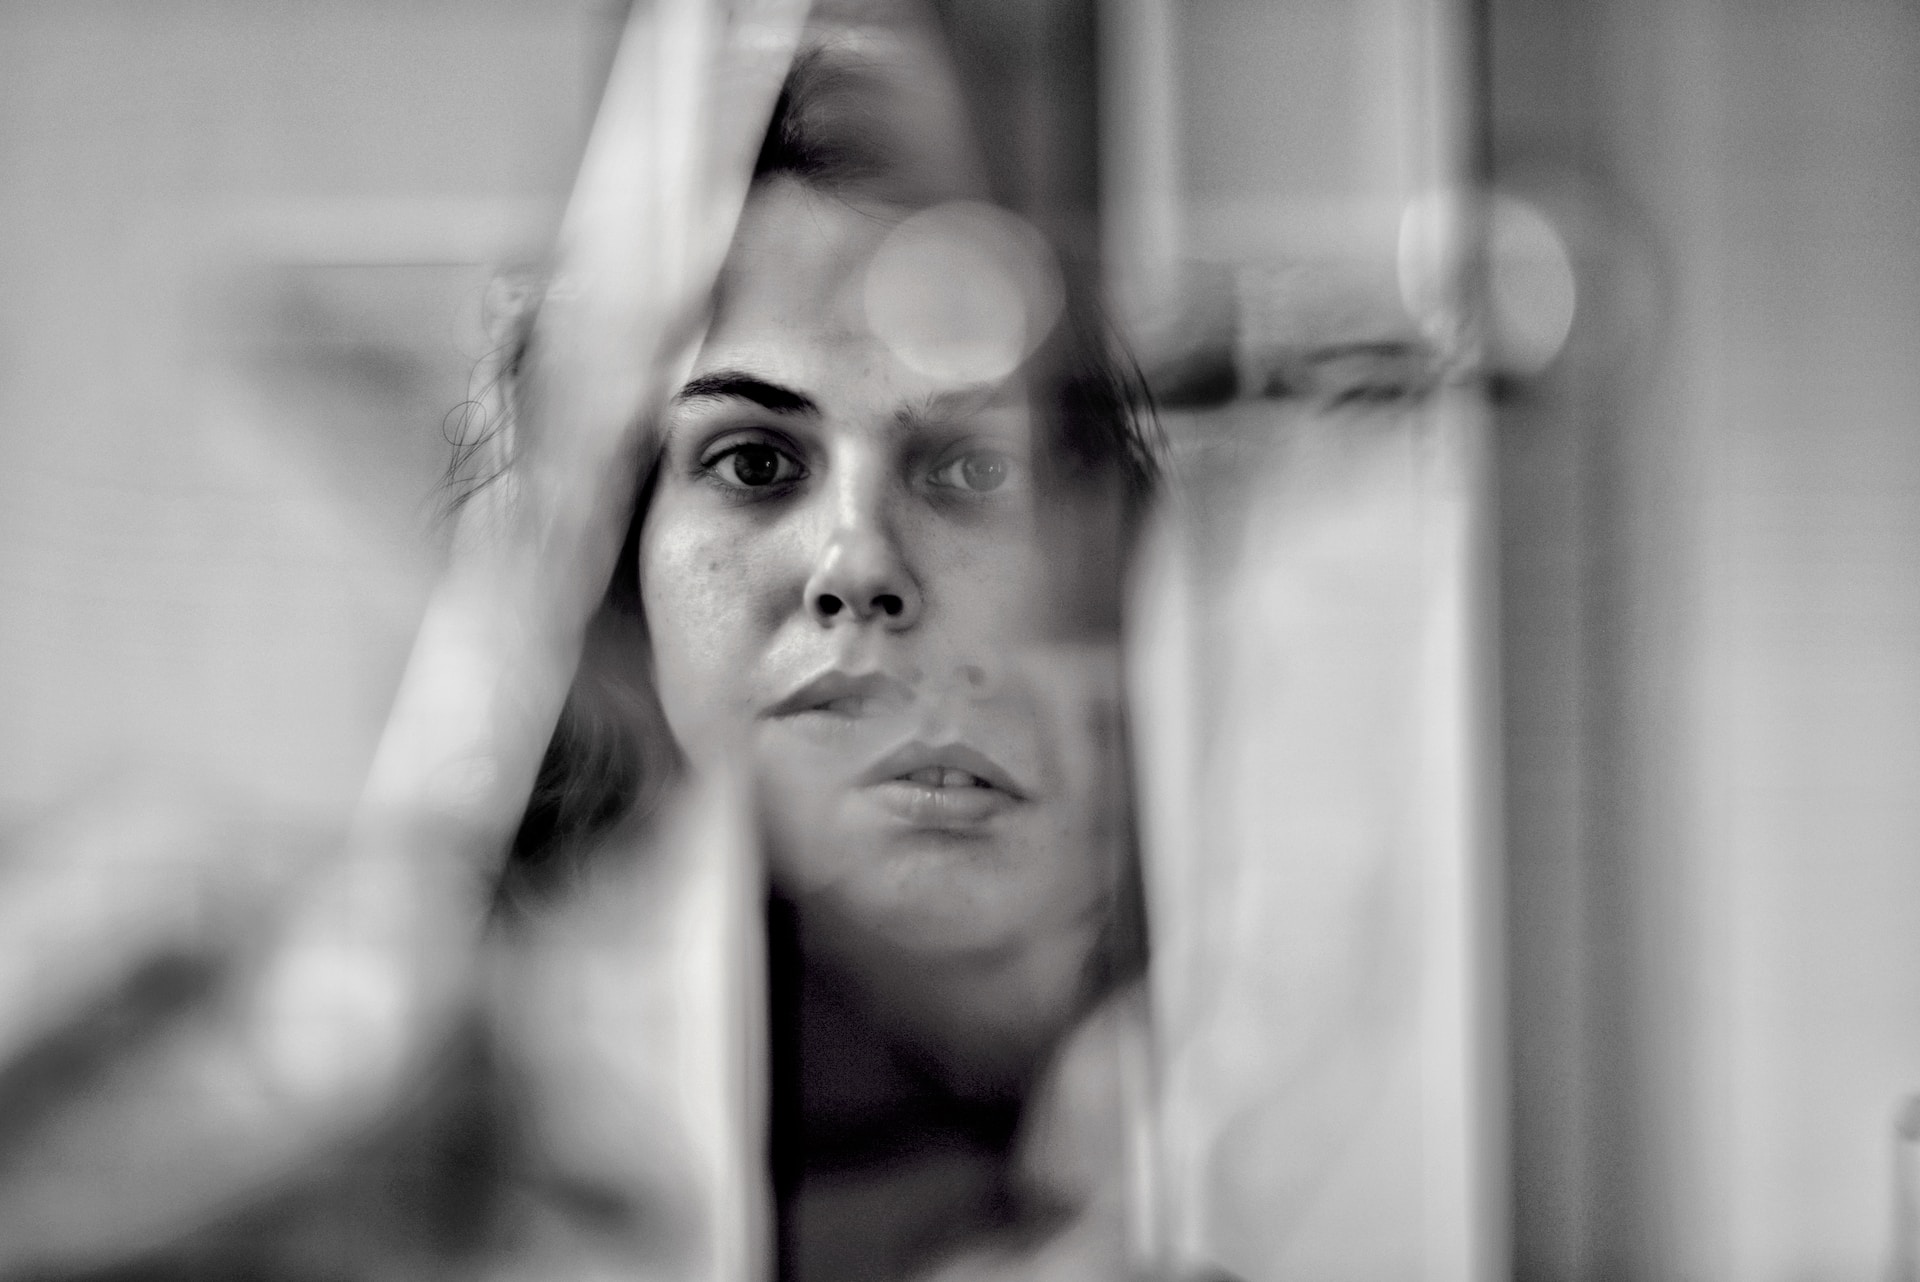 Reflet du visage d'une femme divisé dans le miroir